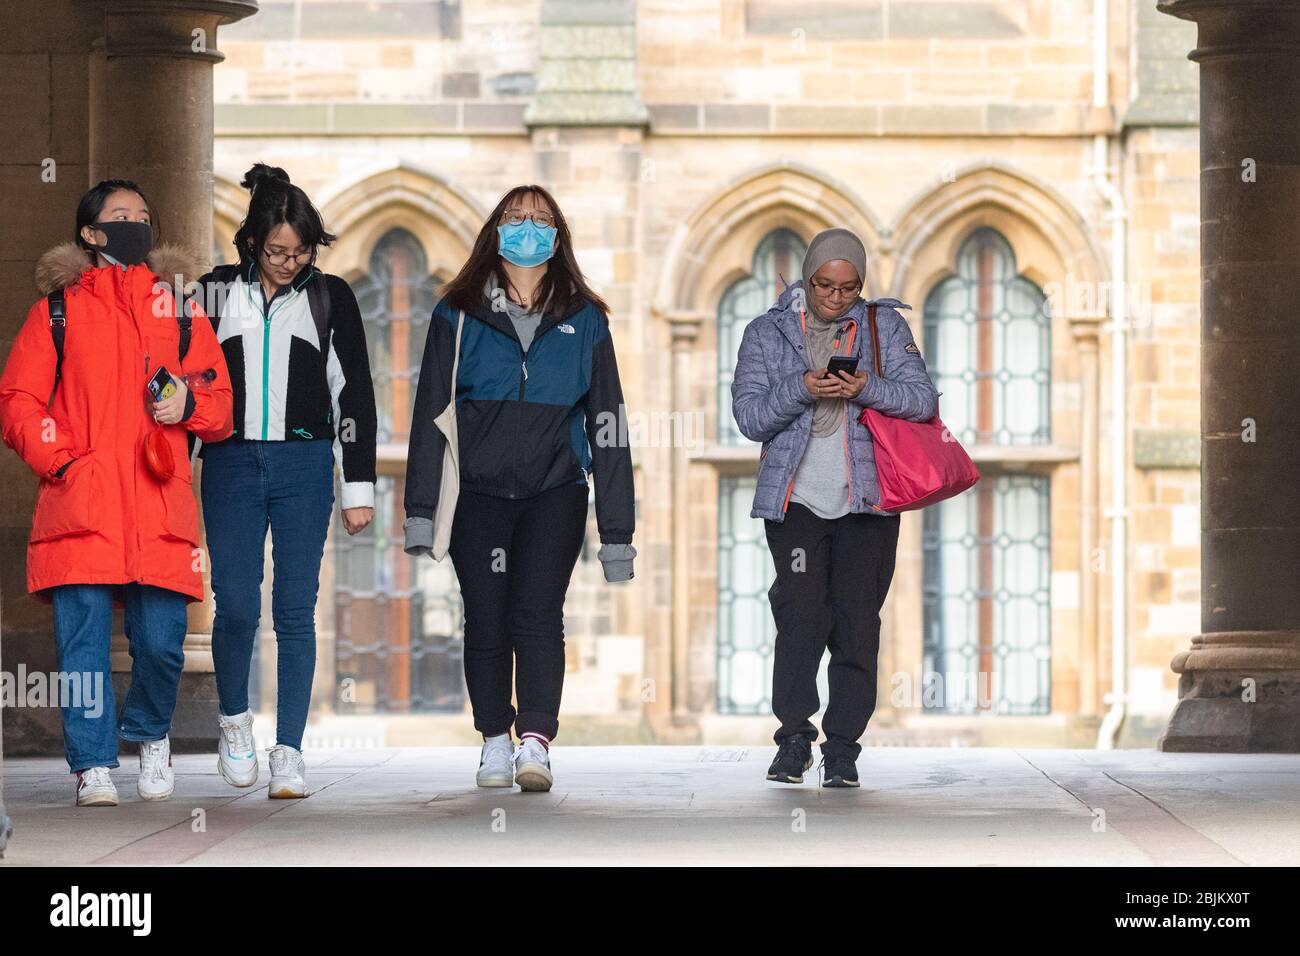 Studenti universitari di Glasgow che indossano maschere di protezione durante la pandemia del coronavirus, Scozia Regno Unito Foto Stock